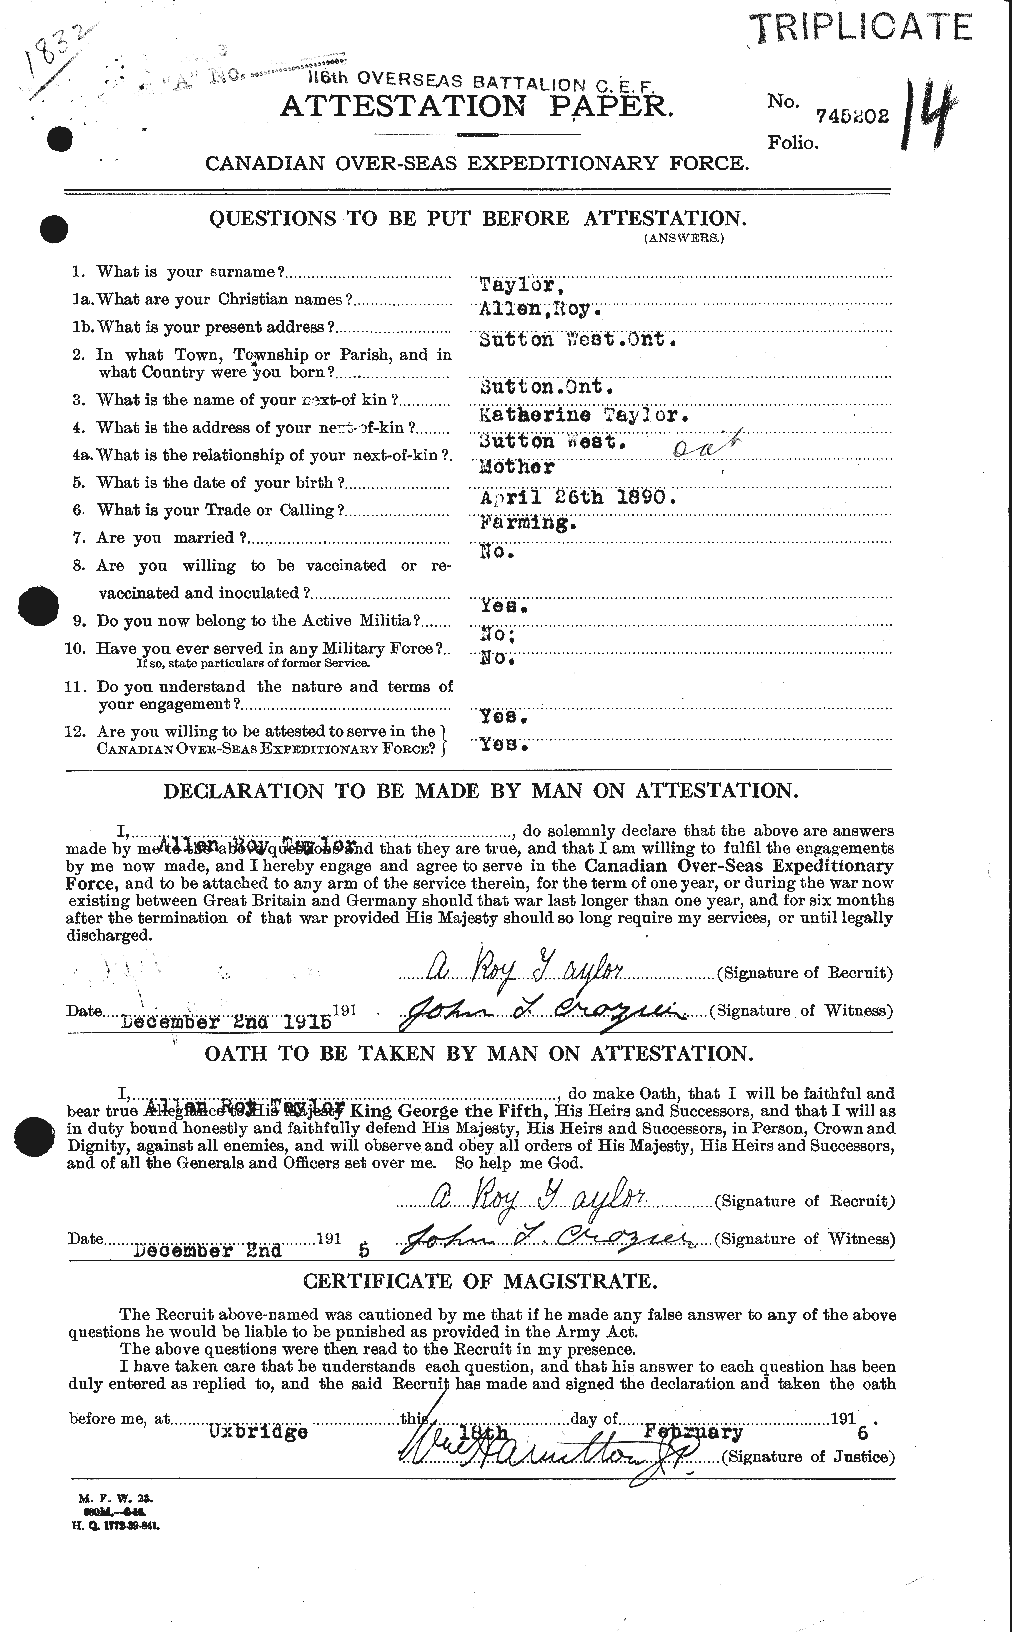 Dossiers du Personnel de la Première Guerre mondiale - CEC 626211a